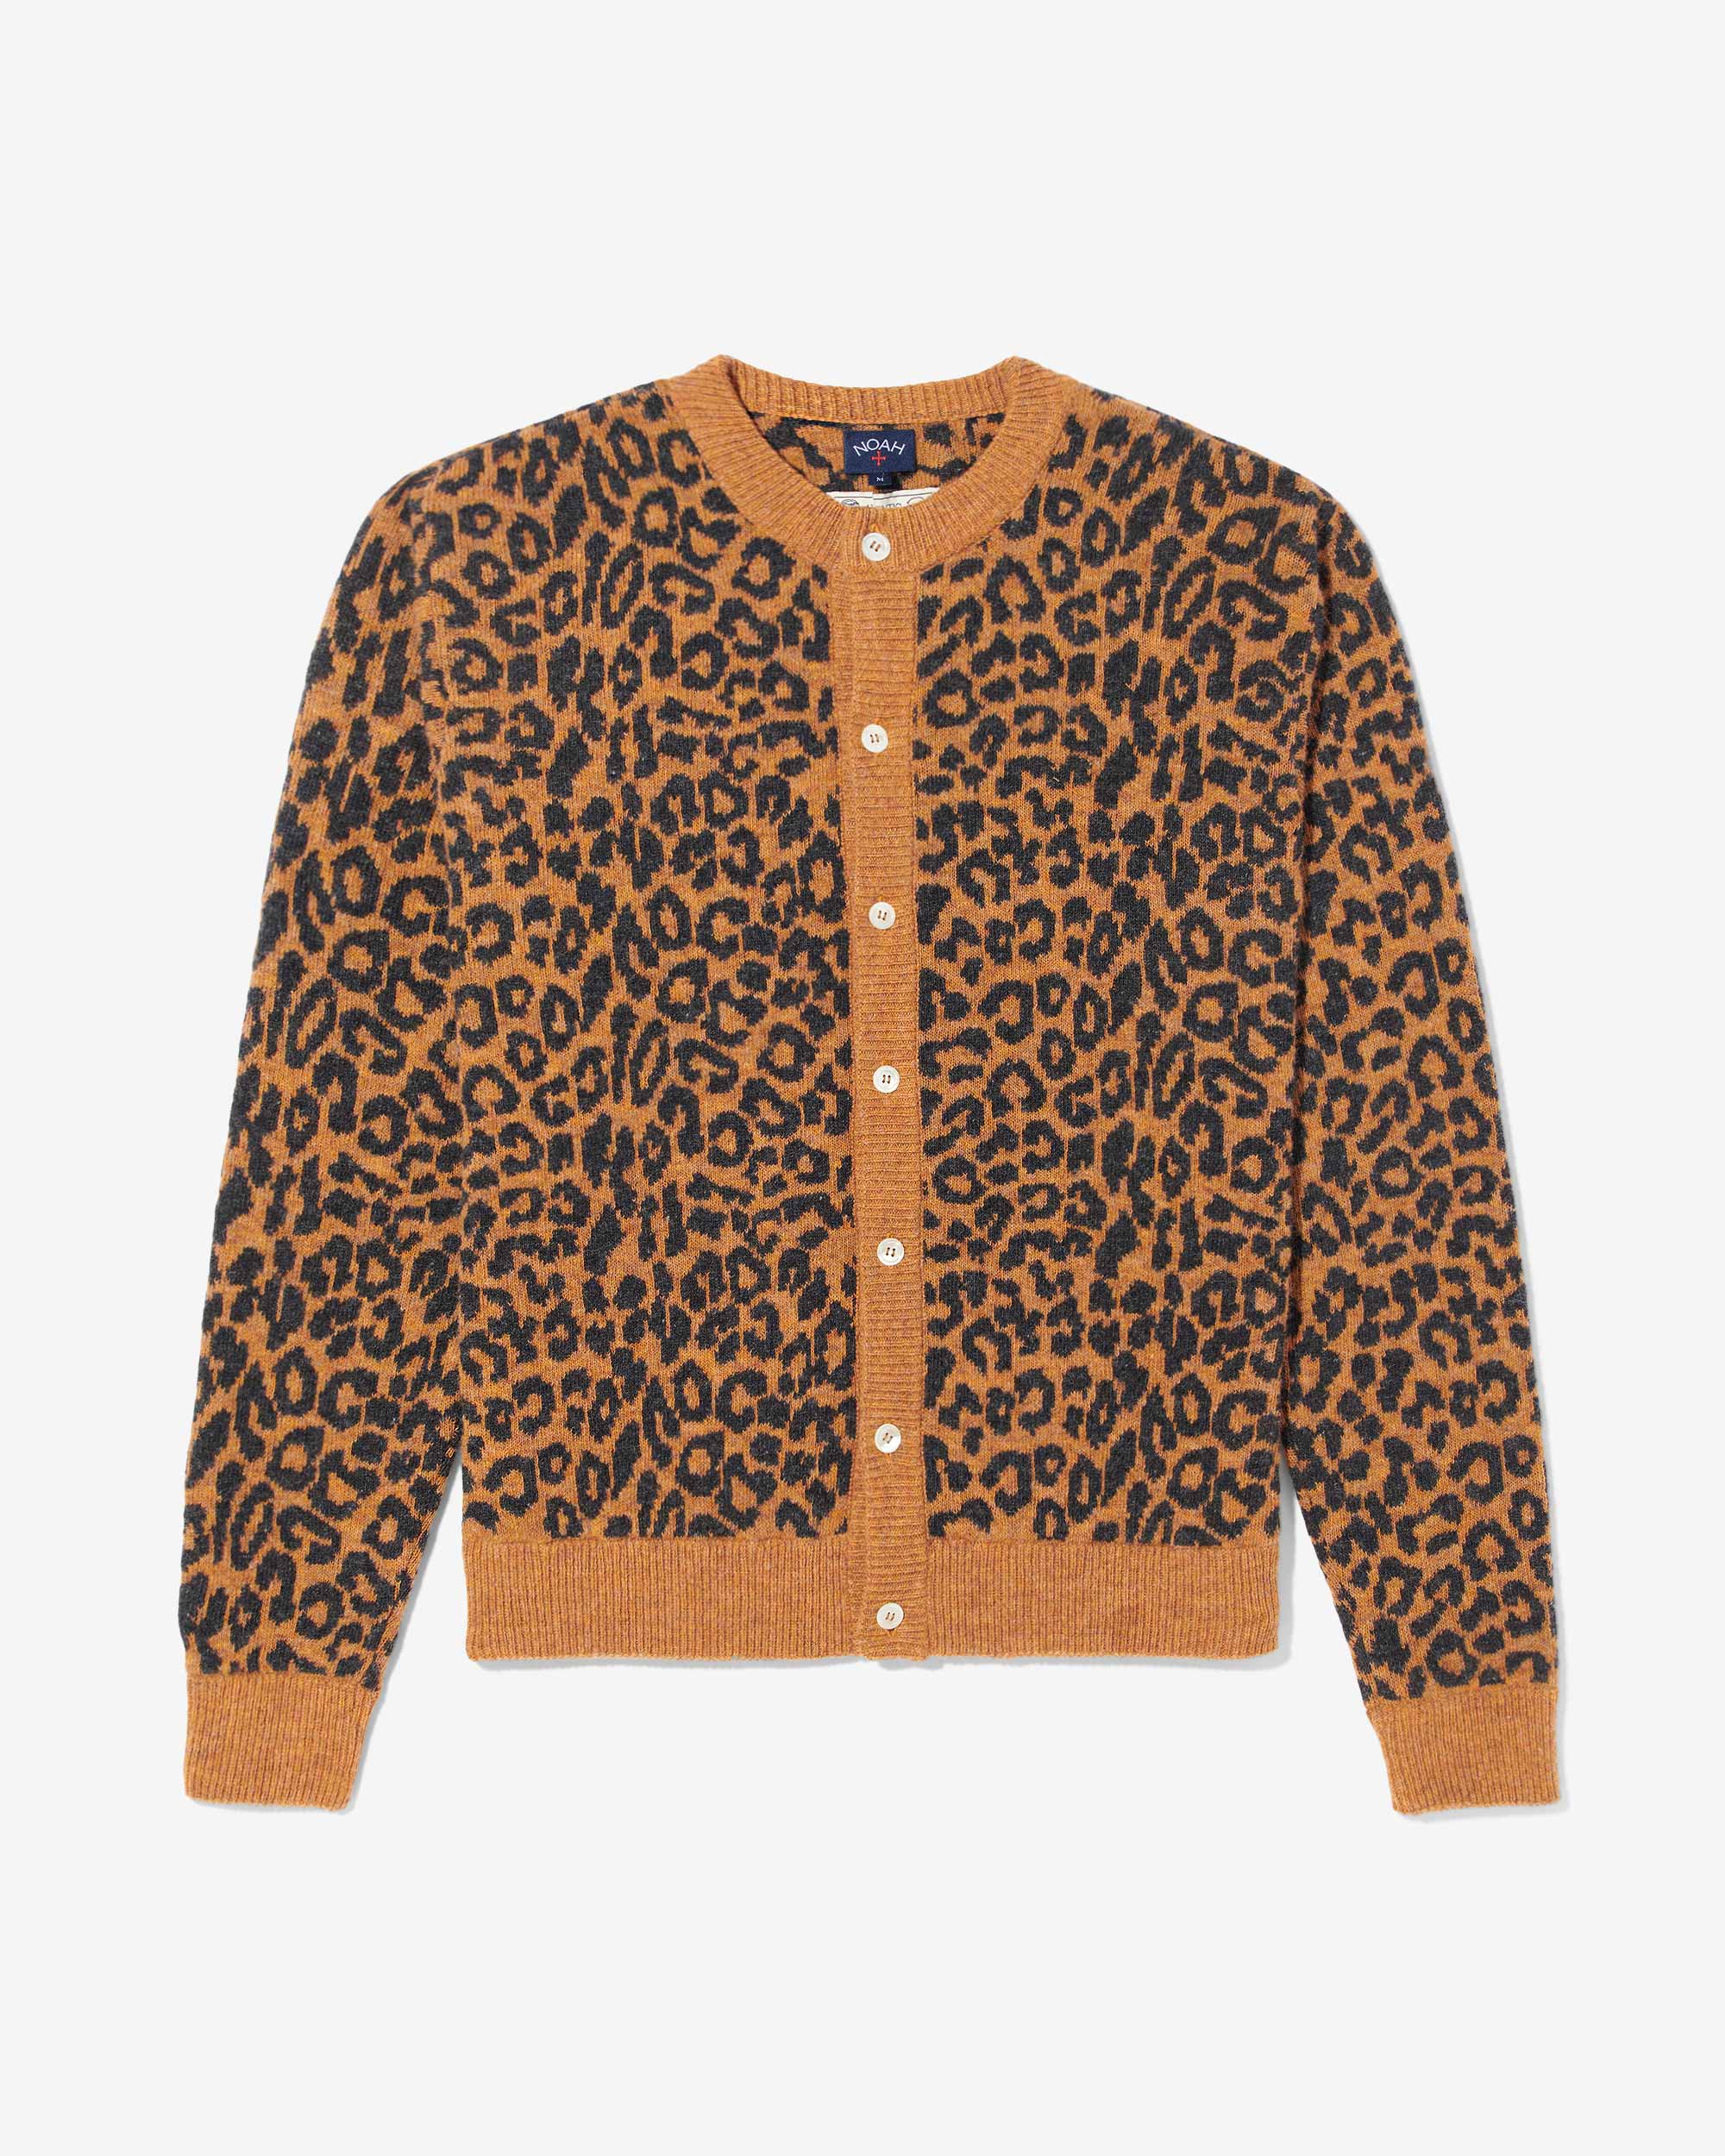 Leopard Cardigan Sweater - Noah